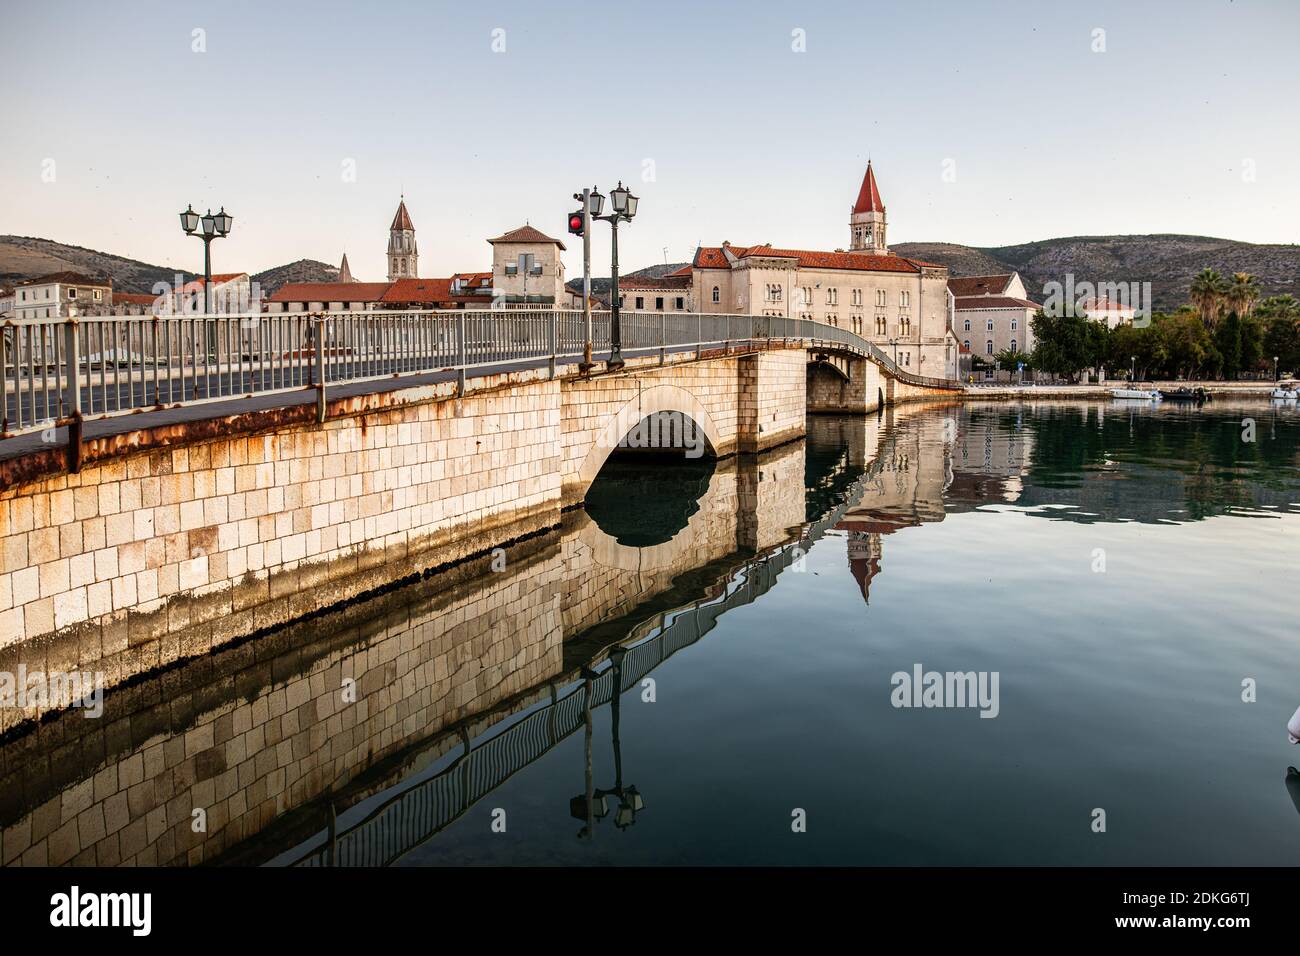 Il ponte per la città vecchia di Trogir, Croazia. La città è patrimonio dell'umanità dell'UNESCO. L'immagine mostra l'acqua calma intorno al ponte all'ora del mattino. Sullo sfondo si può vedere la torre della Cattedrale di San Lorenzo. Foto Stock